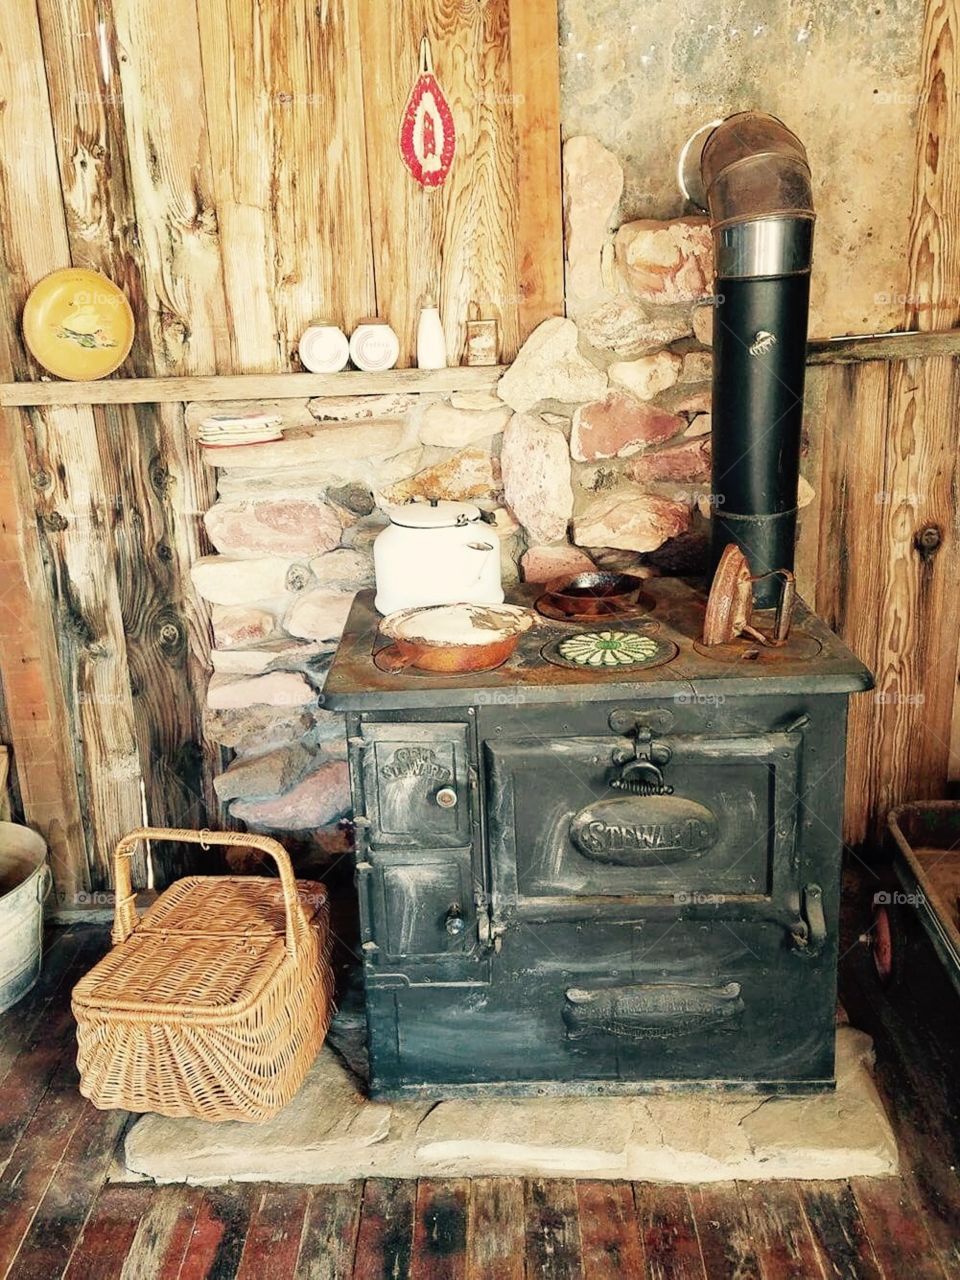 Vintage oven